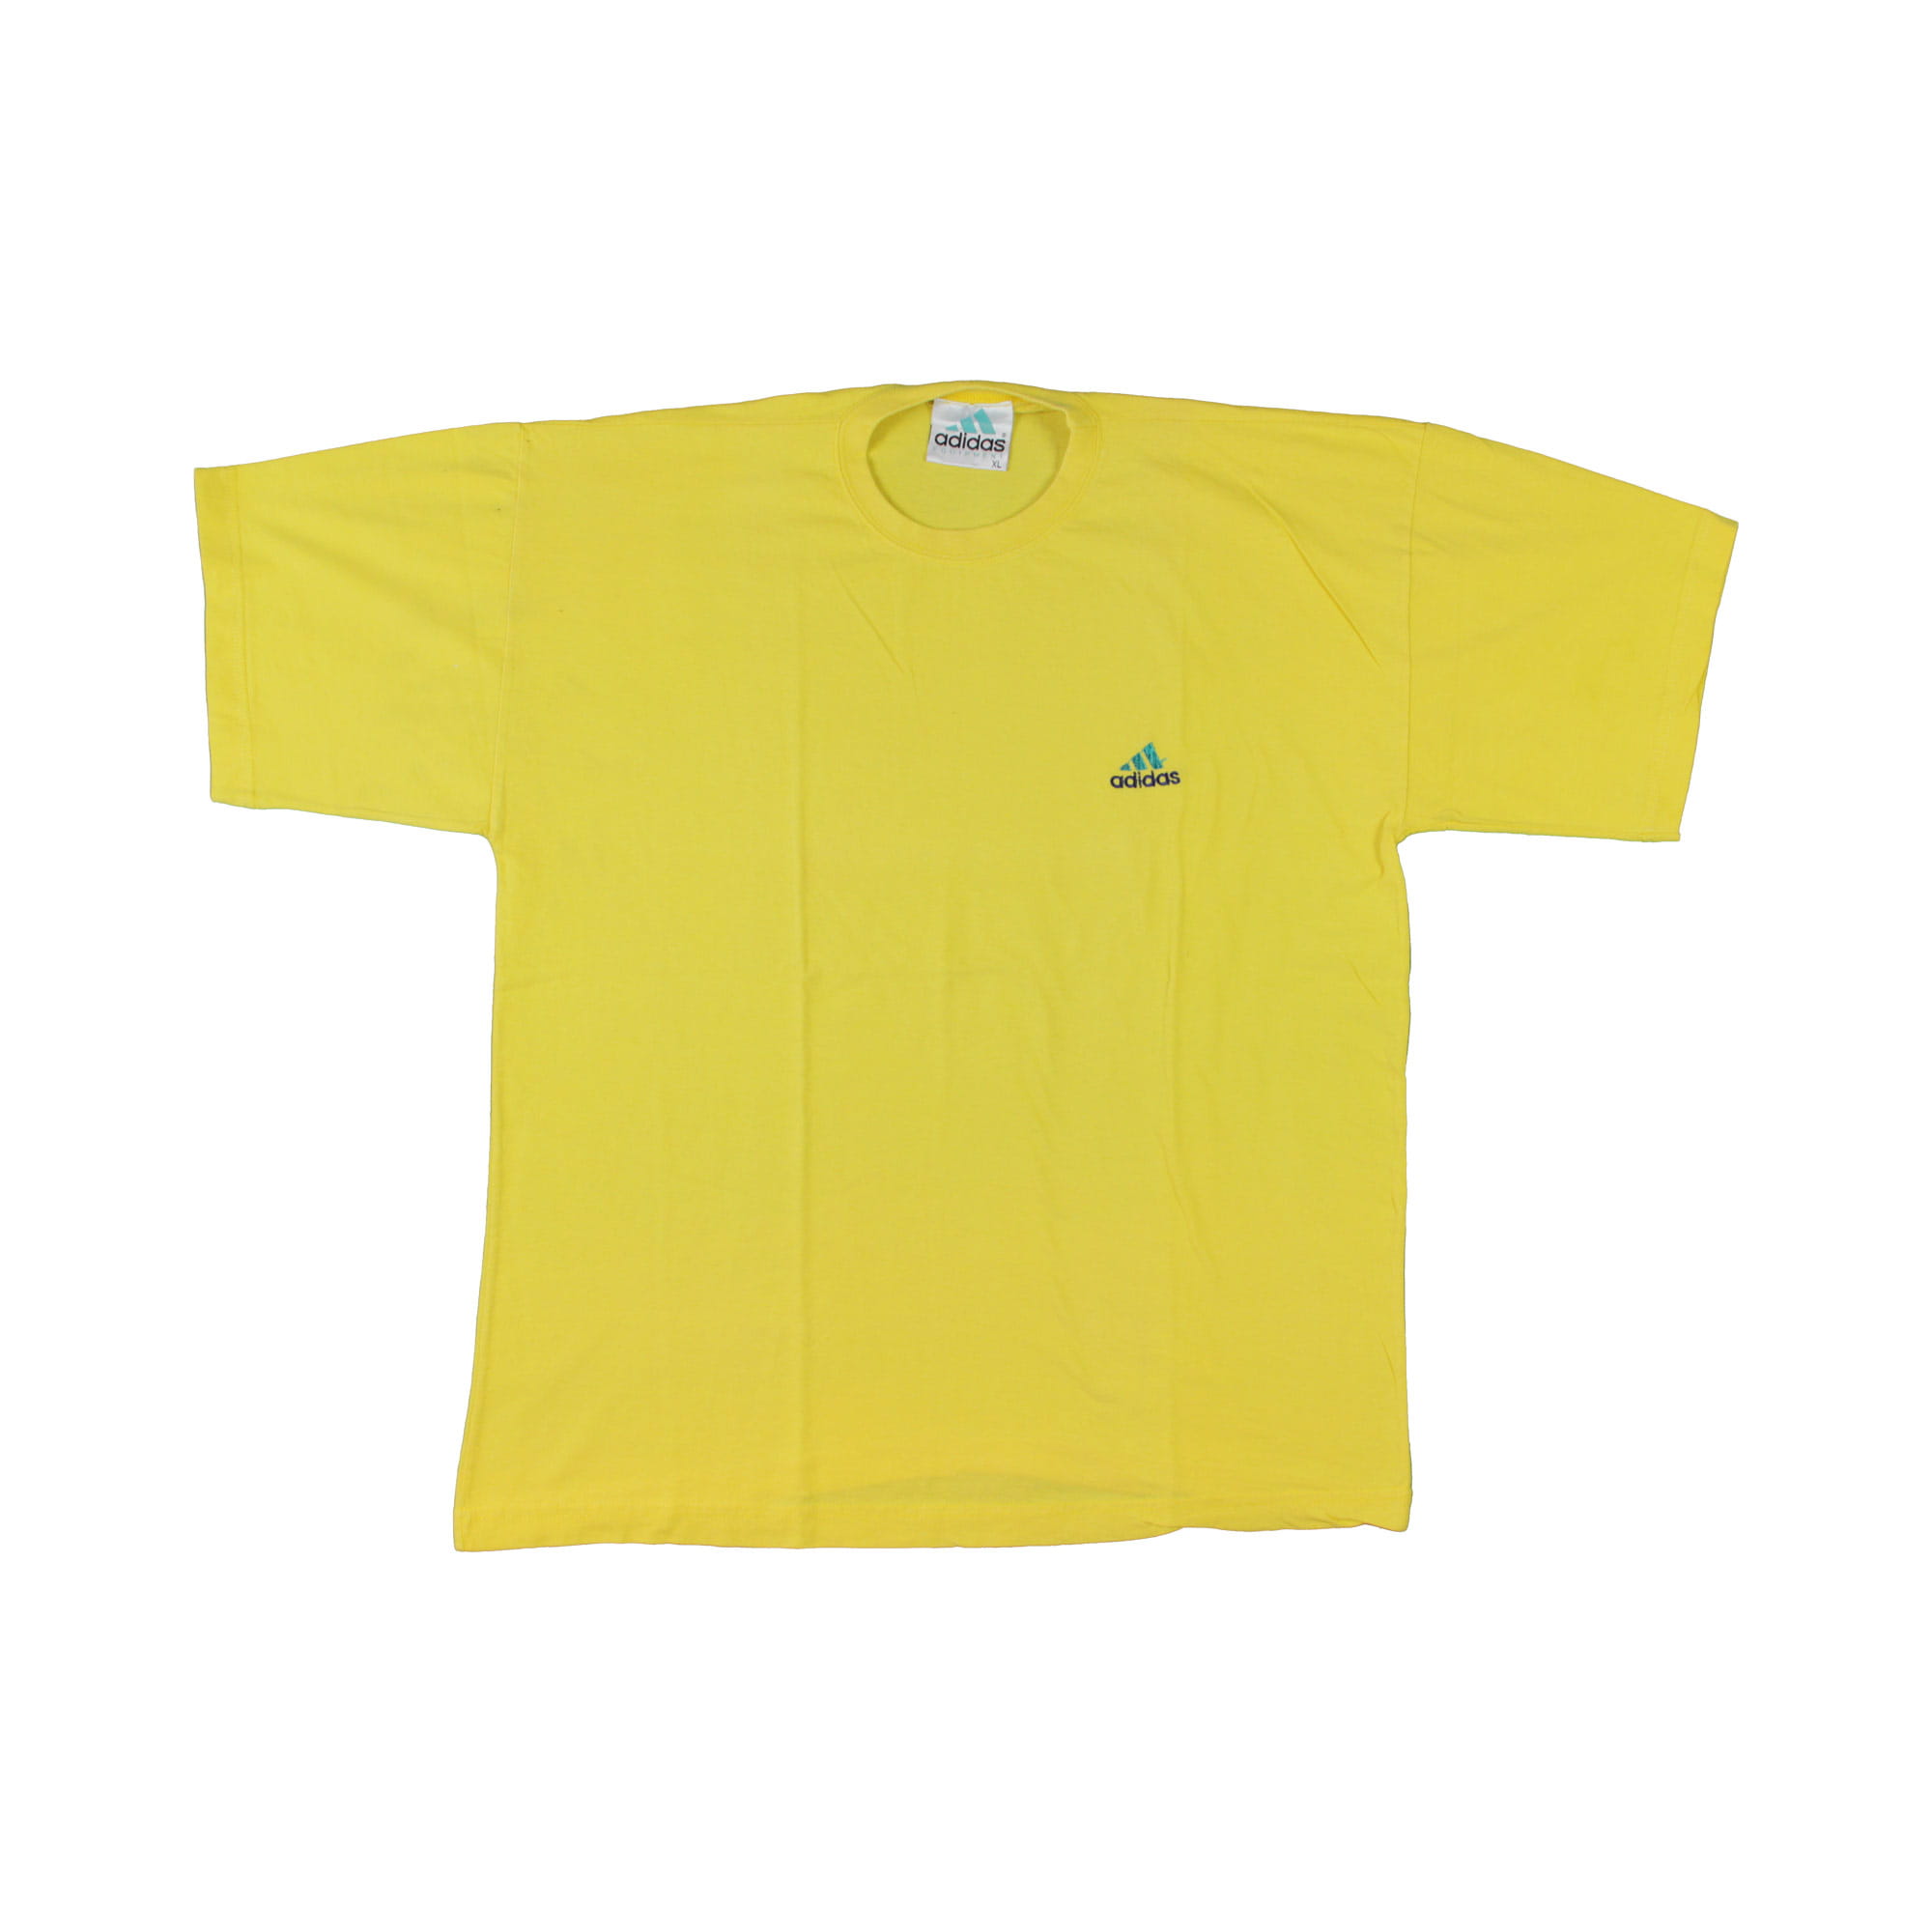 Adidas Vintage Small Logo T-Shirt - XL